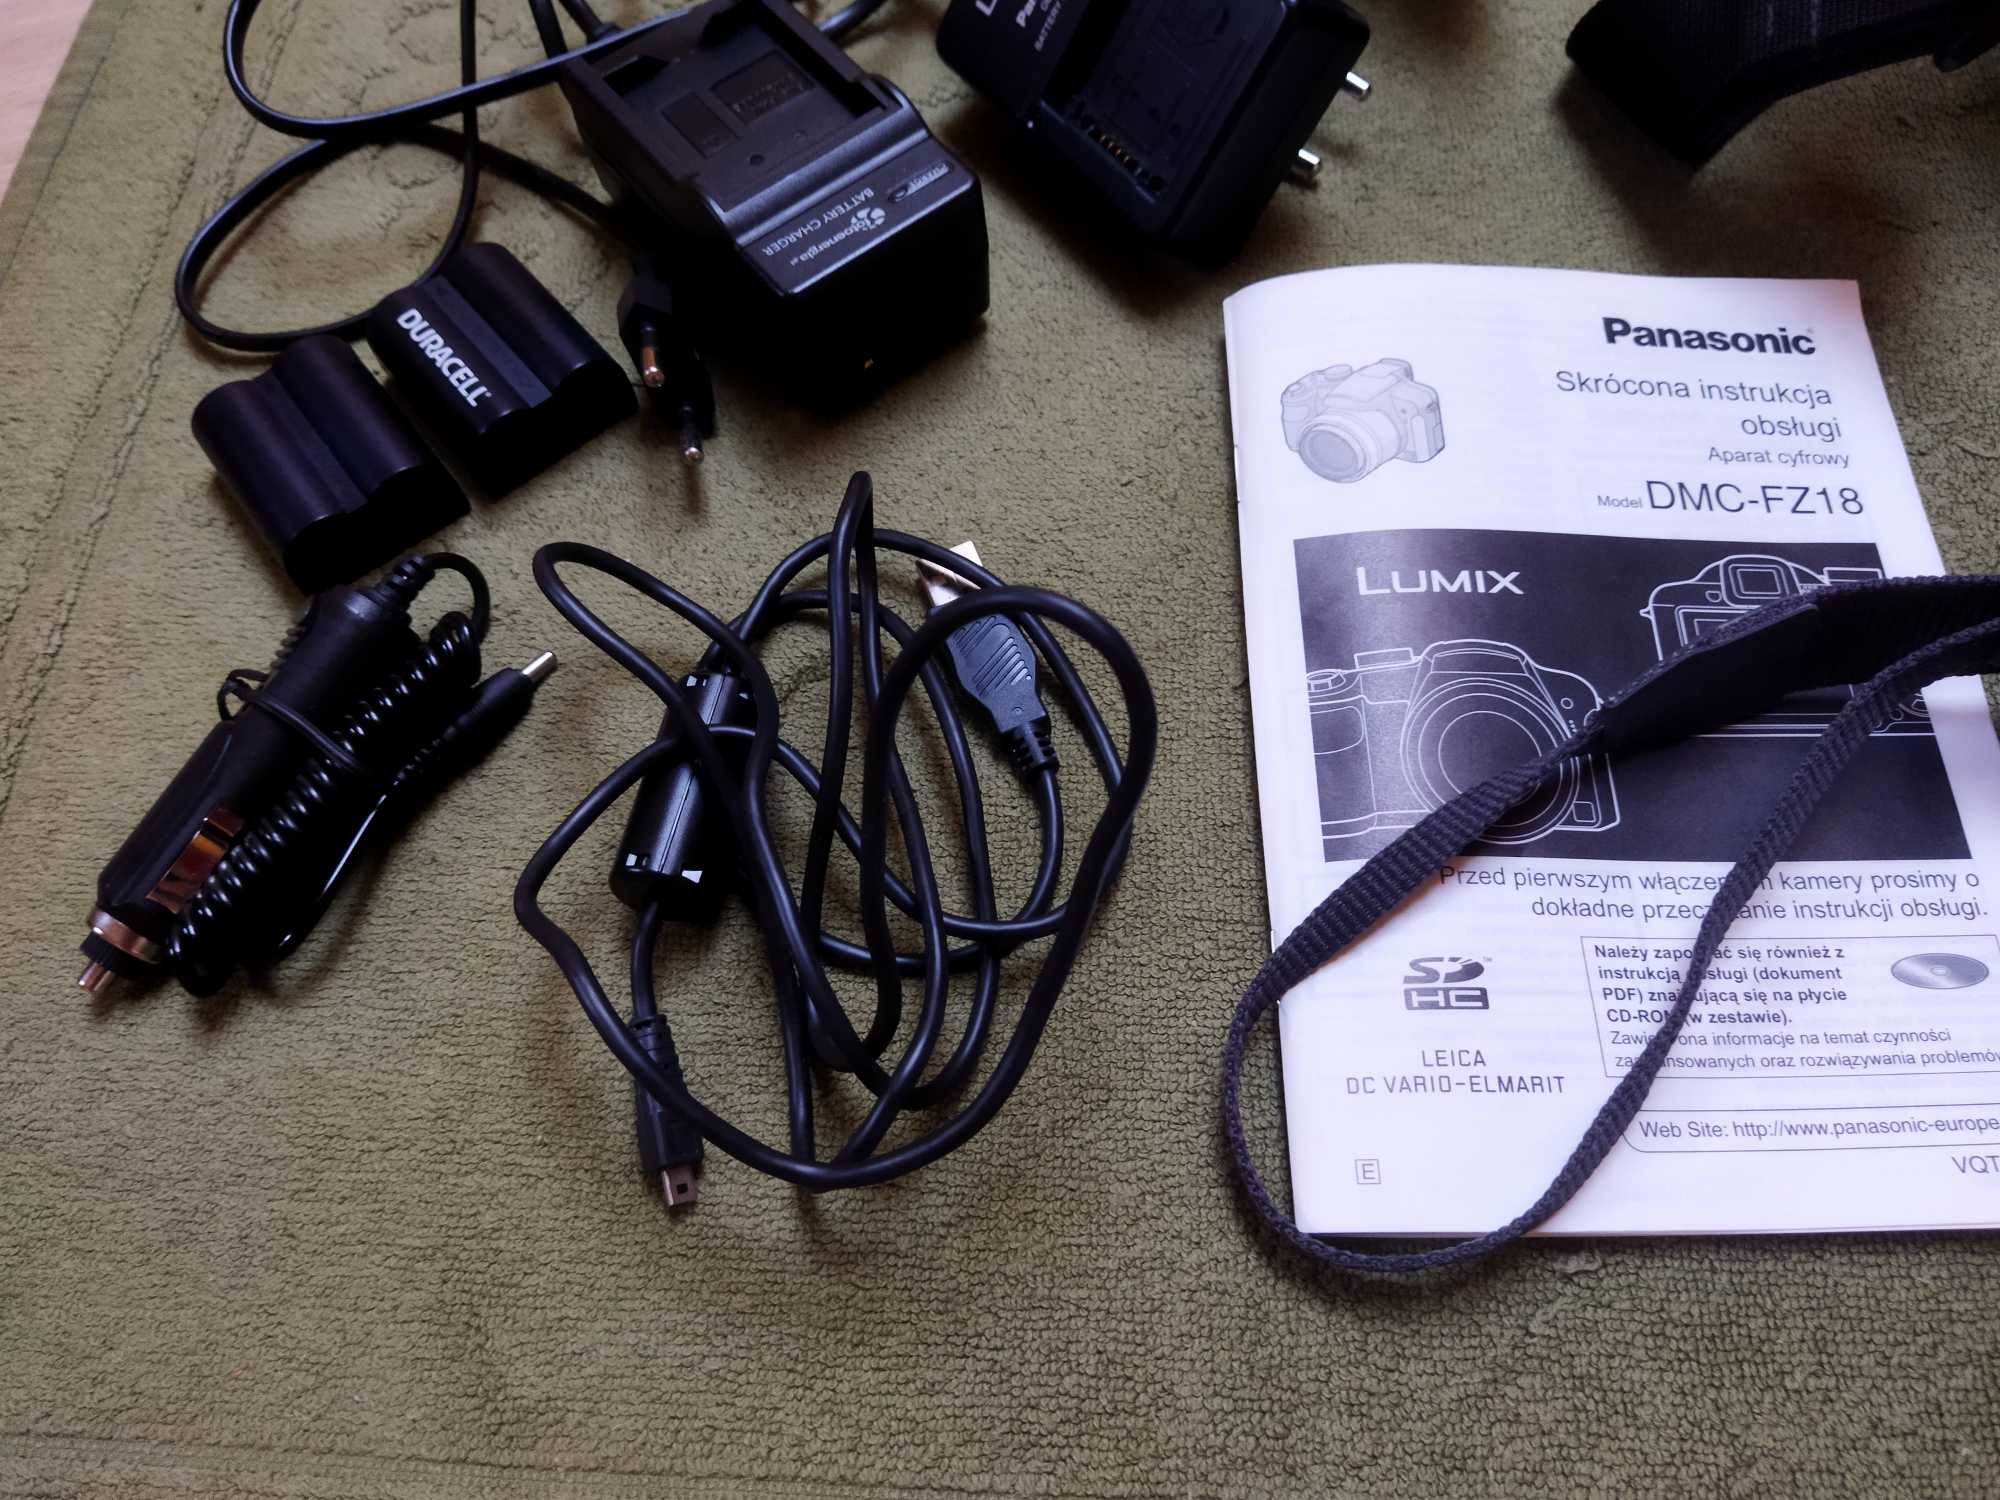 Aparat fotograficzny Panasonic Lumix DMC-FZ18 ze statywem